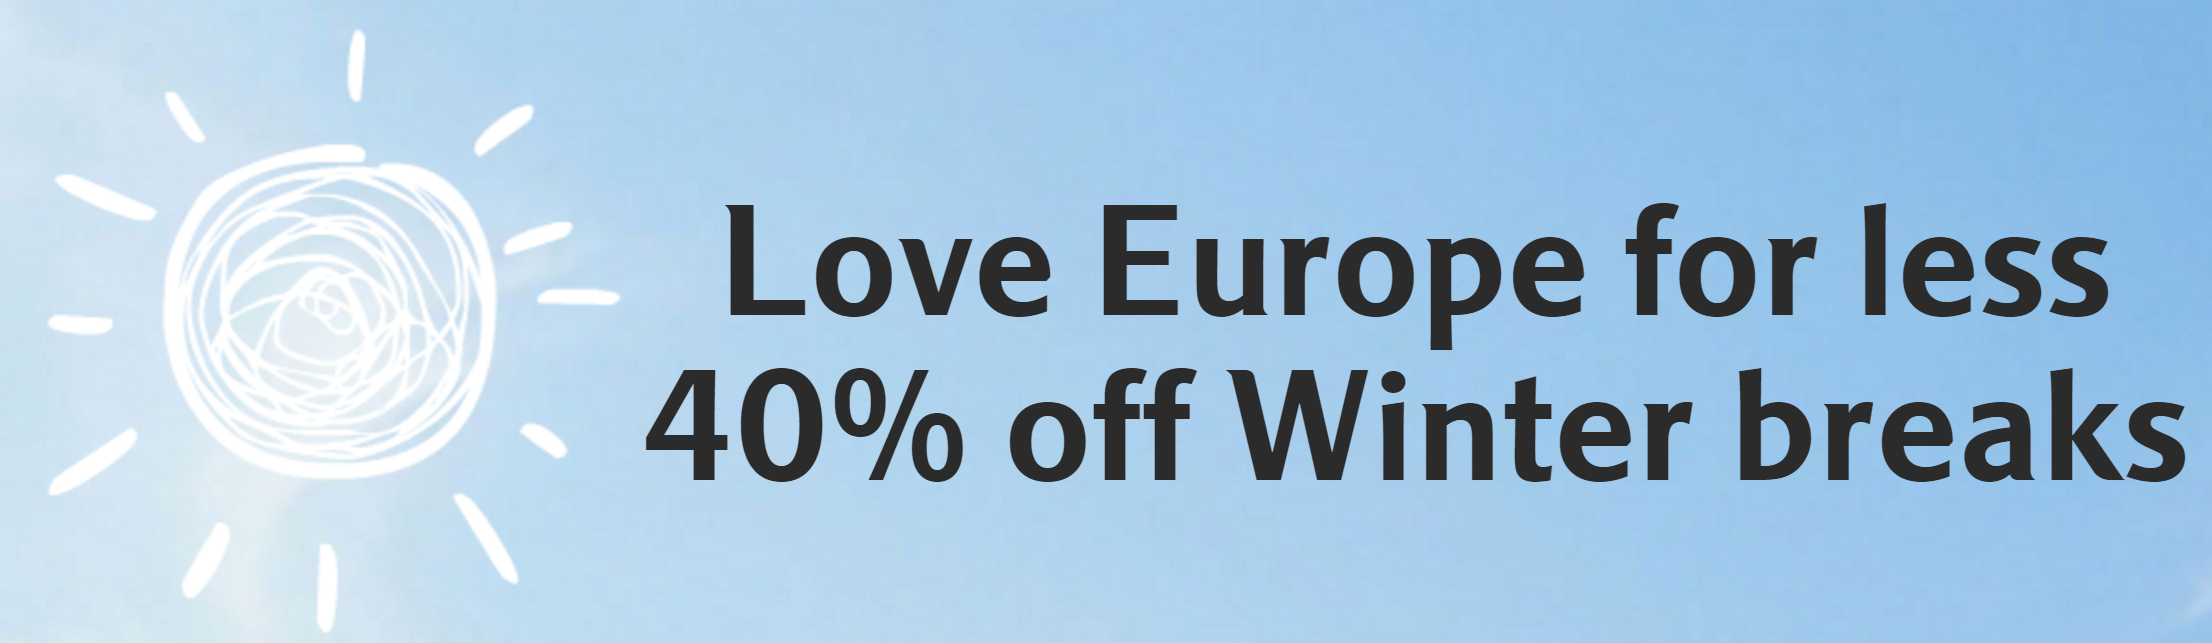 2015-december-marriott-discount-europe